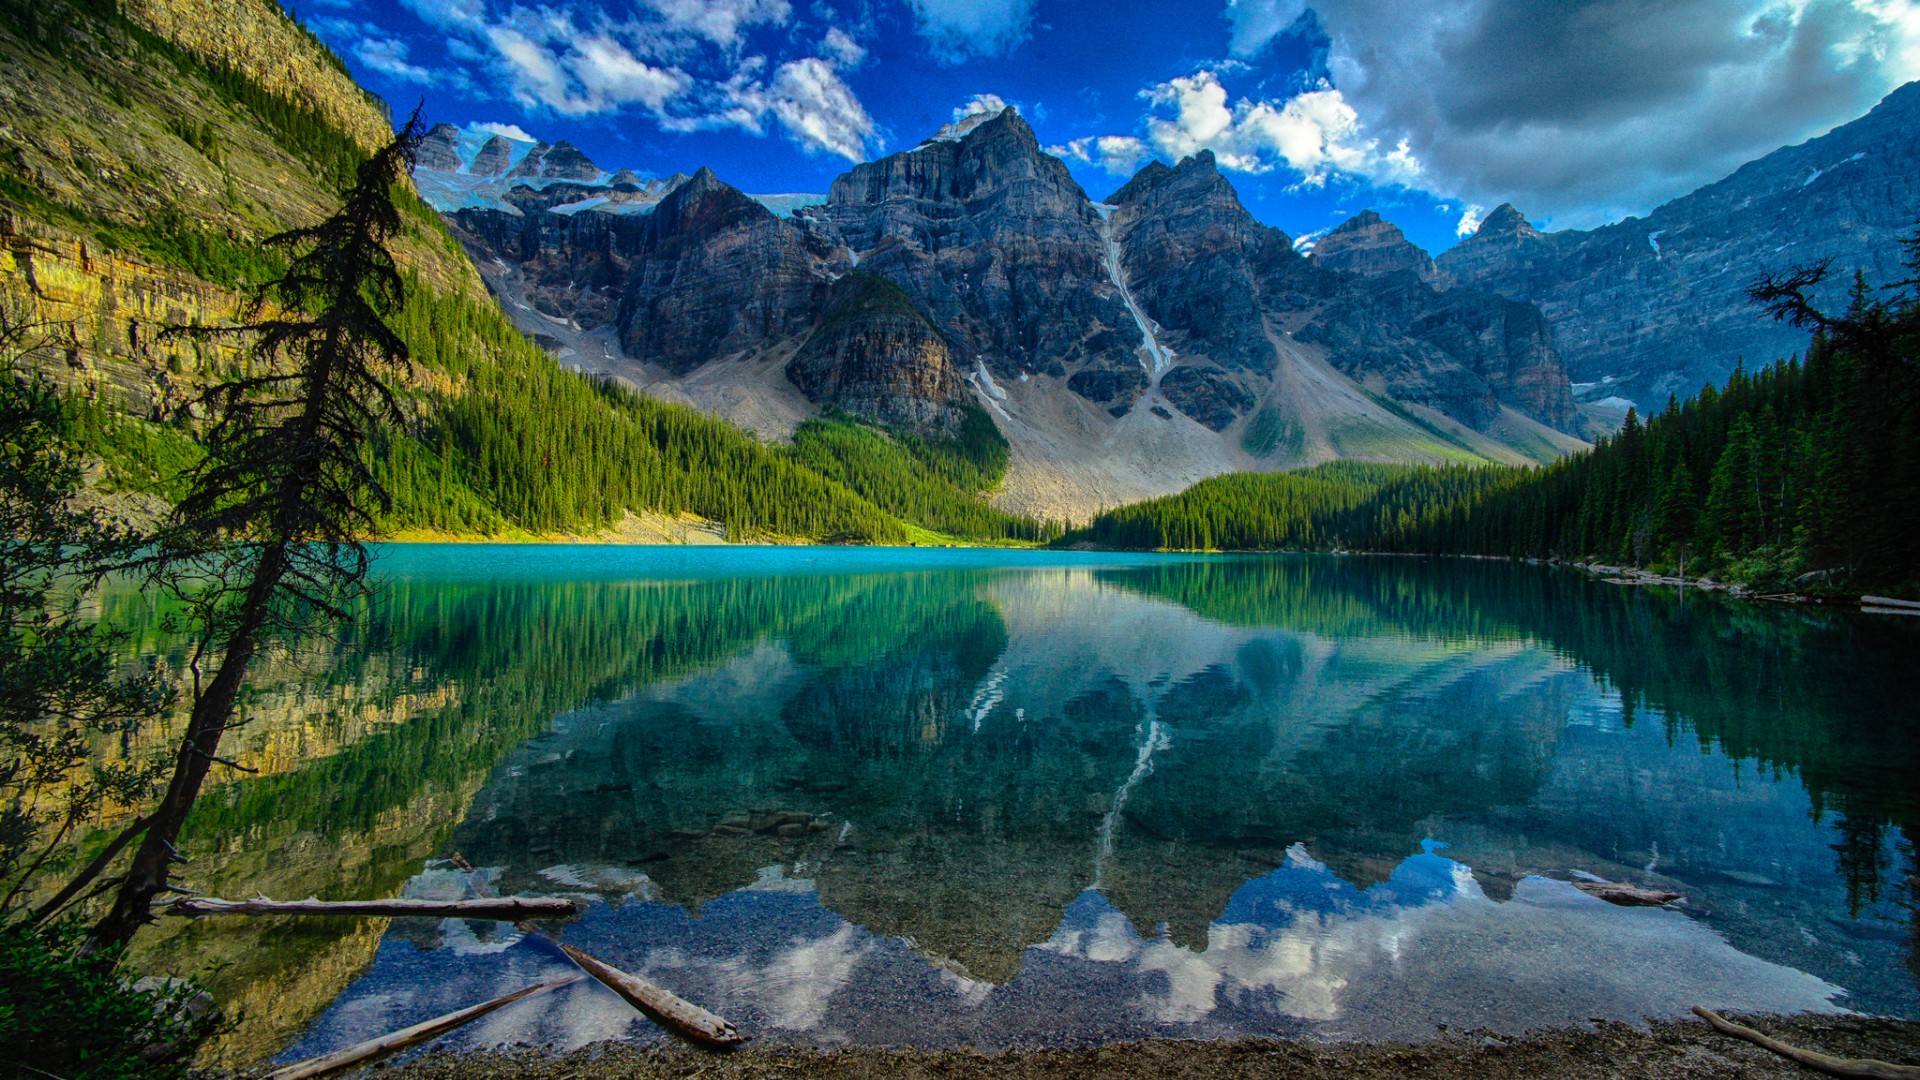 加拿大风景树木,山,湖水,自然风景图片桌面壁纸